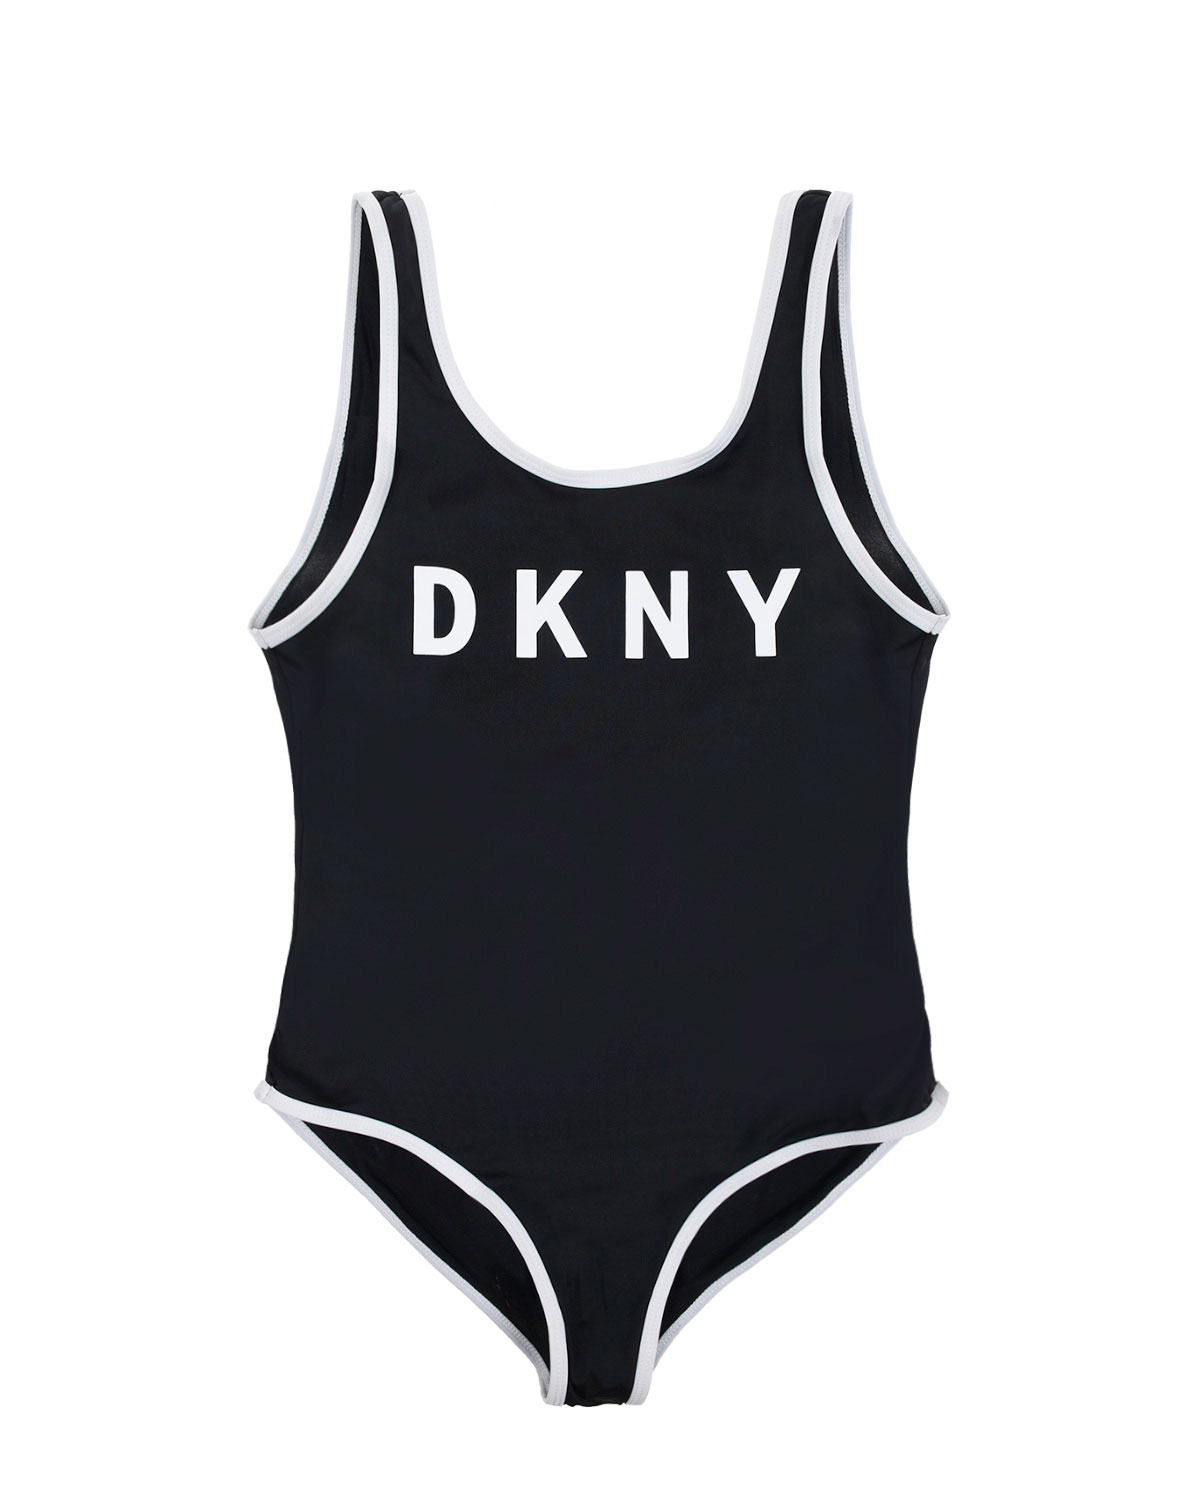 Закрытый купальник с контрастной отделкой DKNY детский